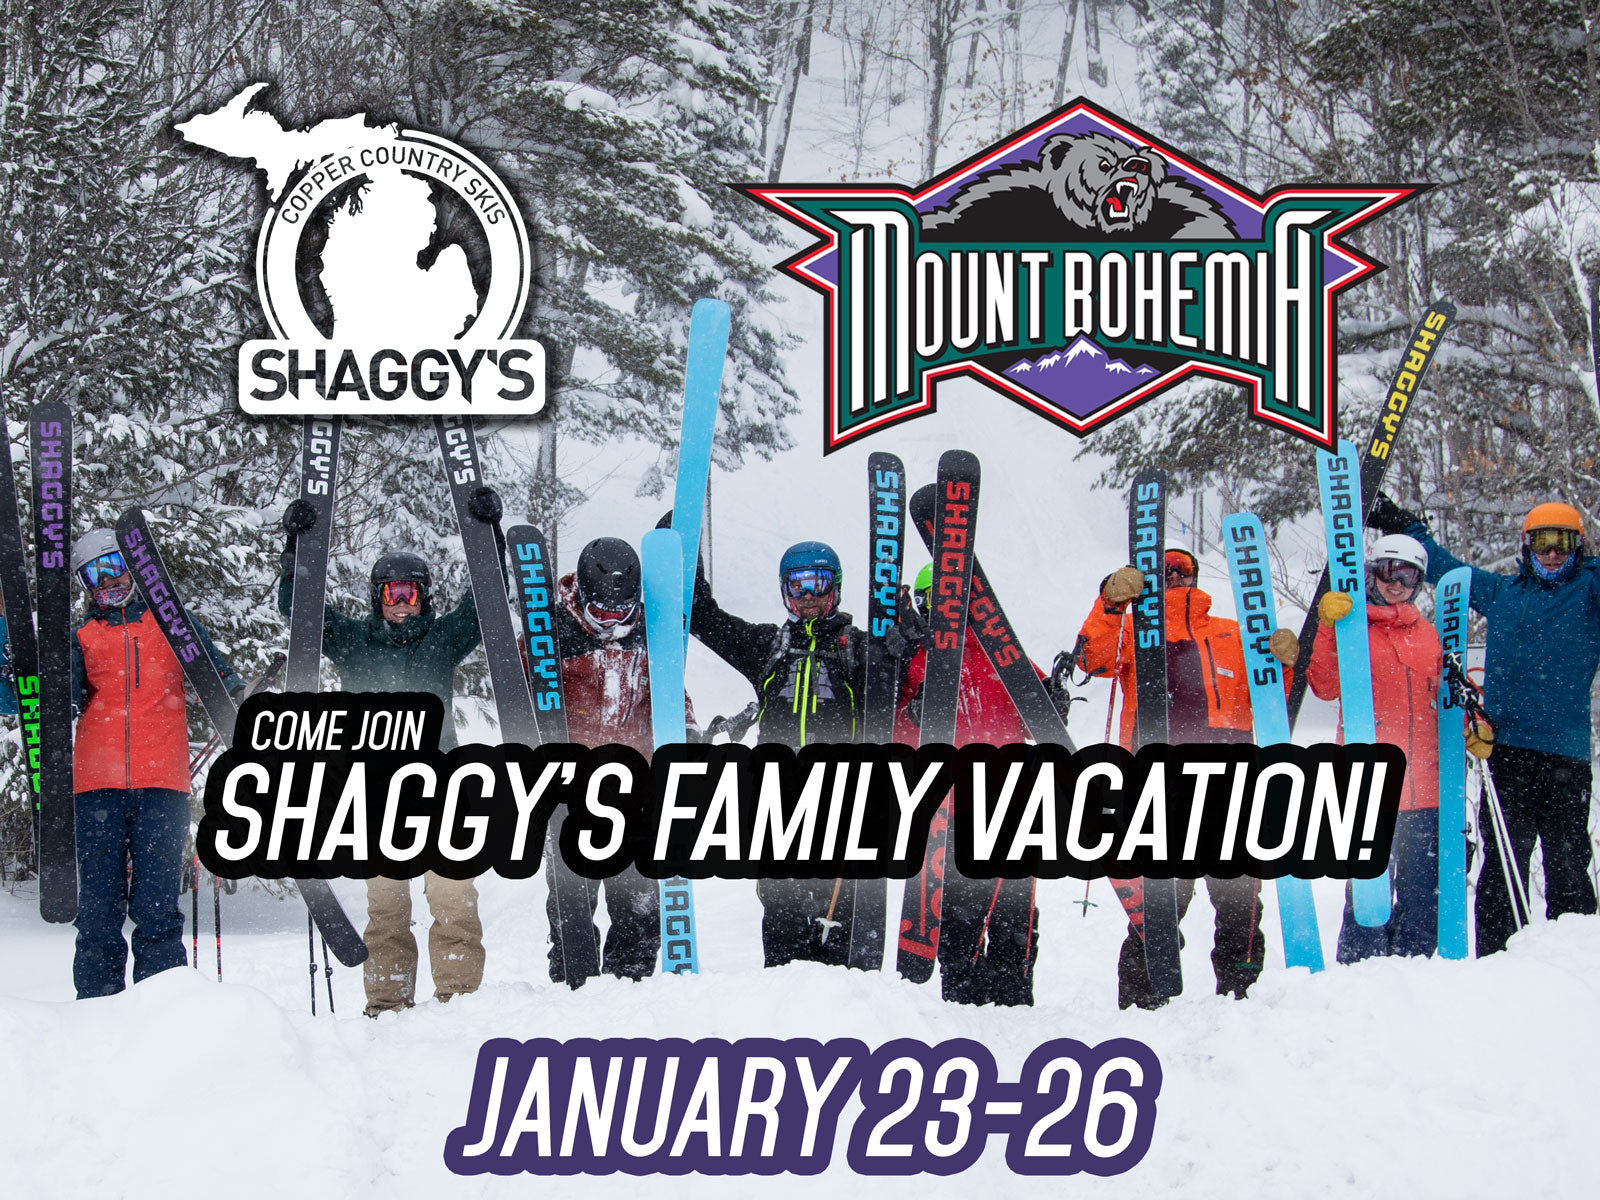 Shaggy's Family Vacation at Mount Bohemia 2020